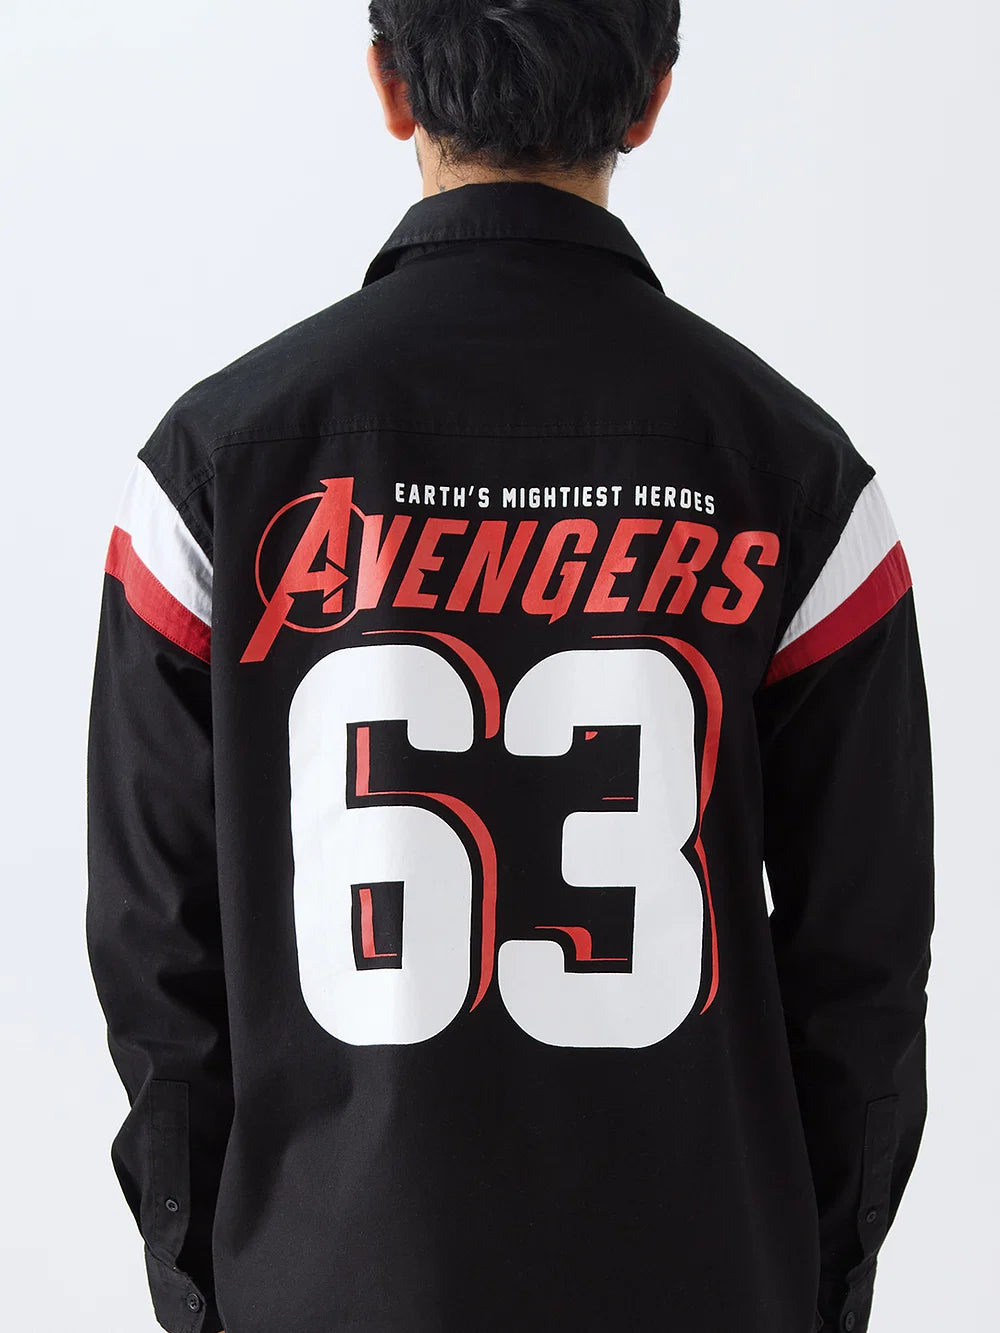 Marvel Avengers 63 (version britannique)